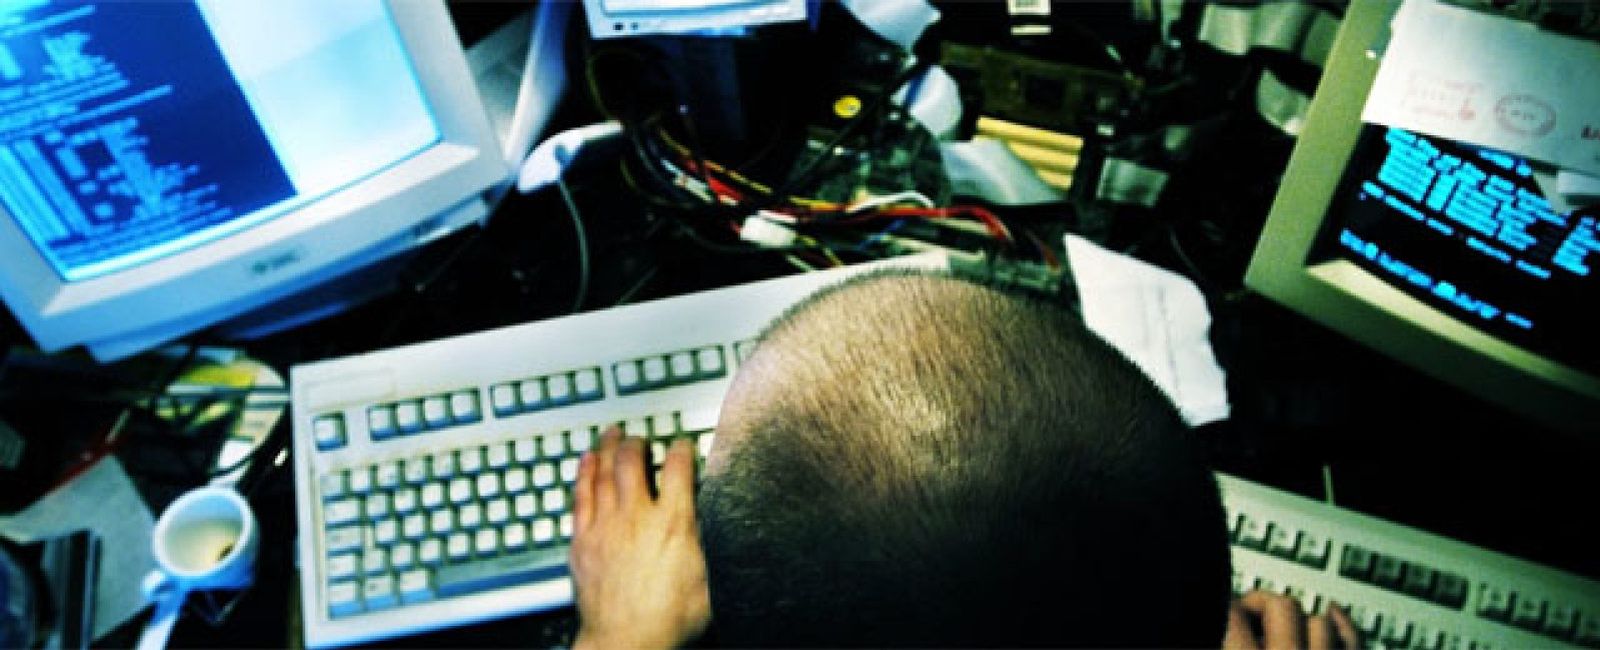 Foto: La Policía Nacional se anota un tanto al 'cazar' a un peligroso hacker ruso